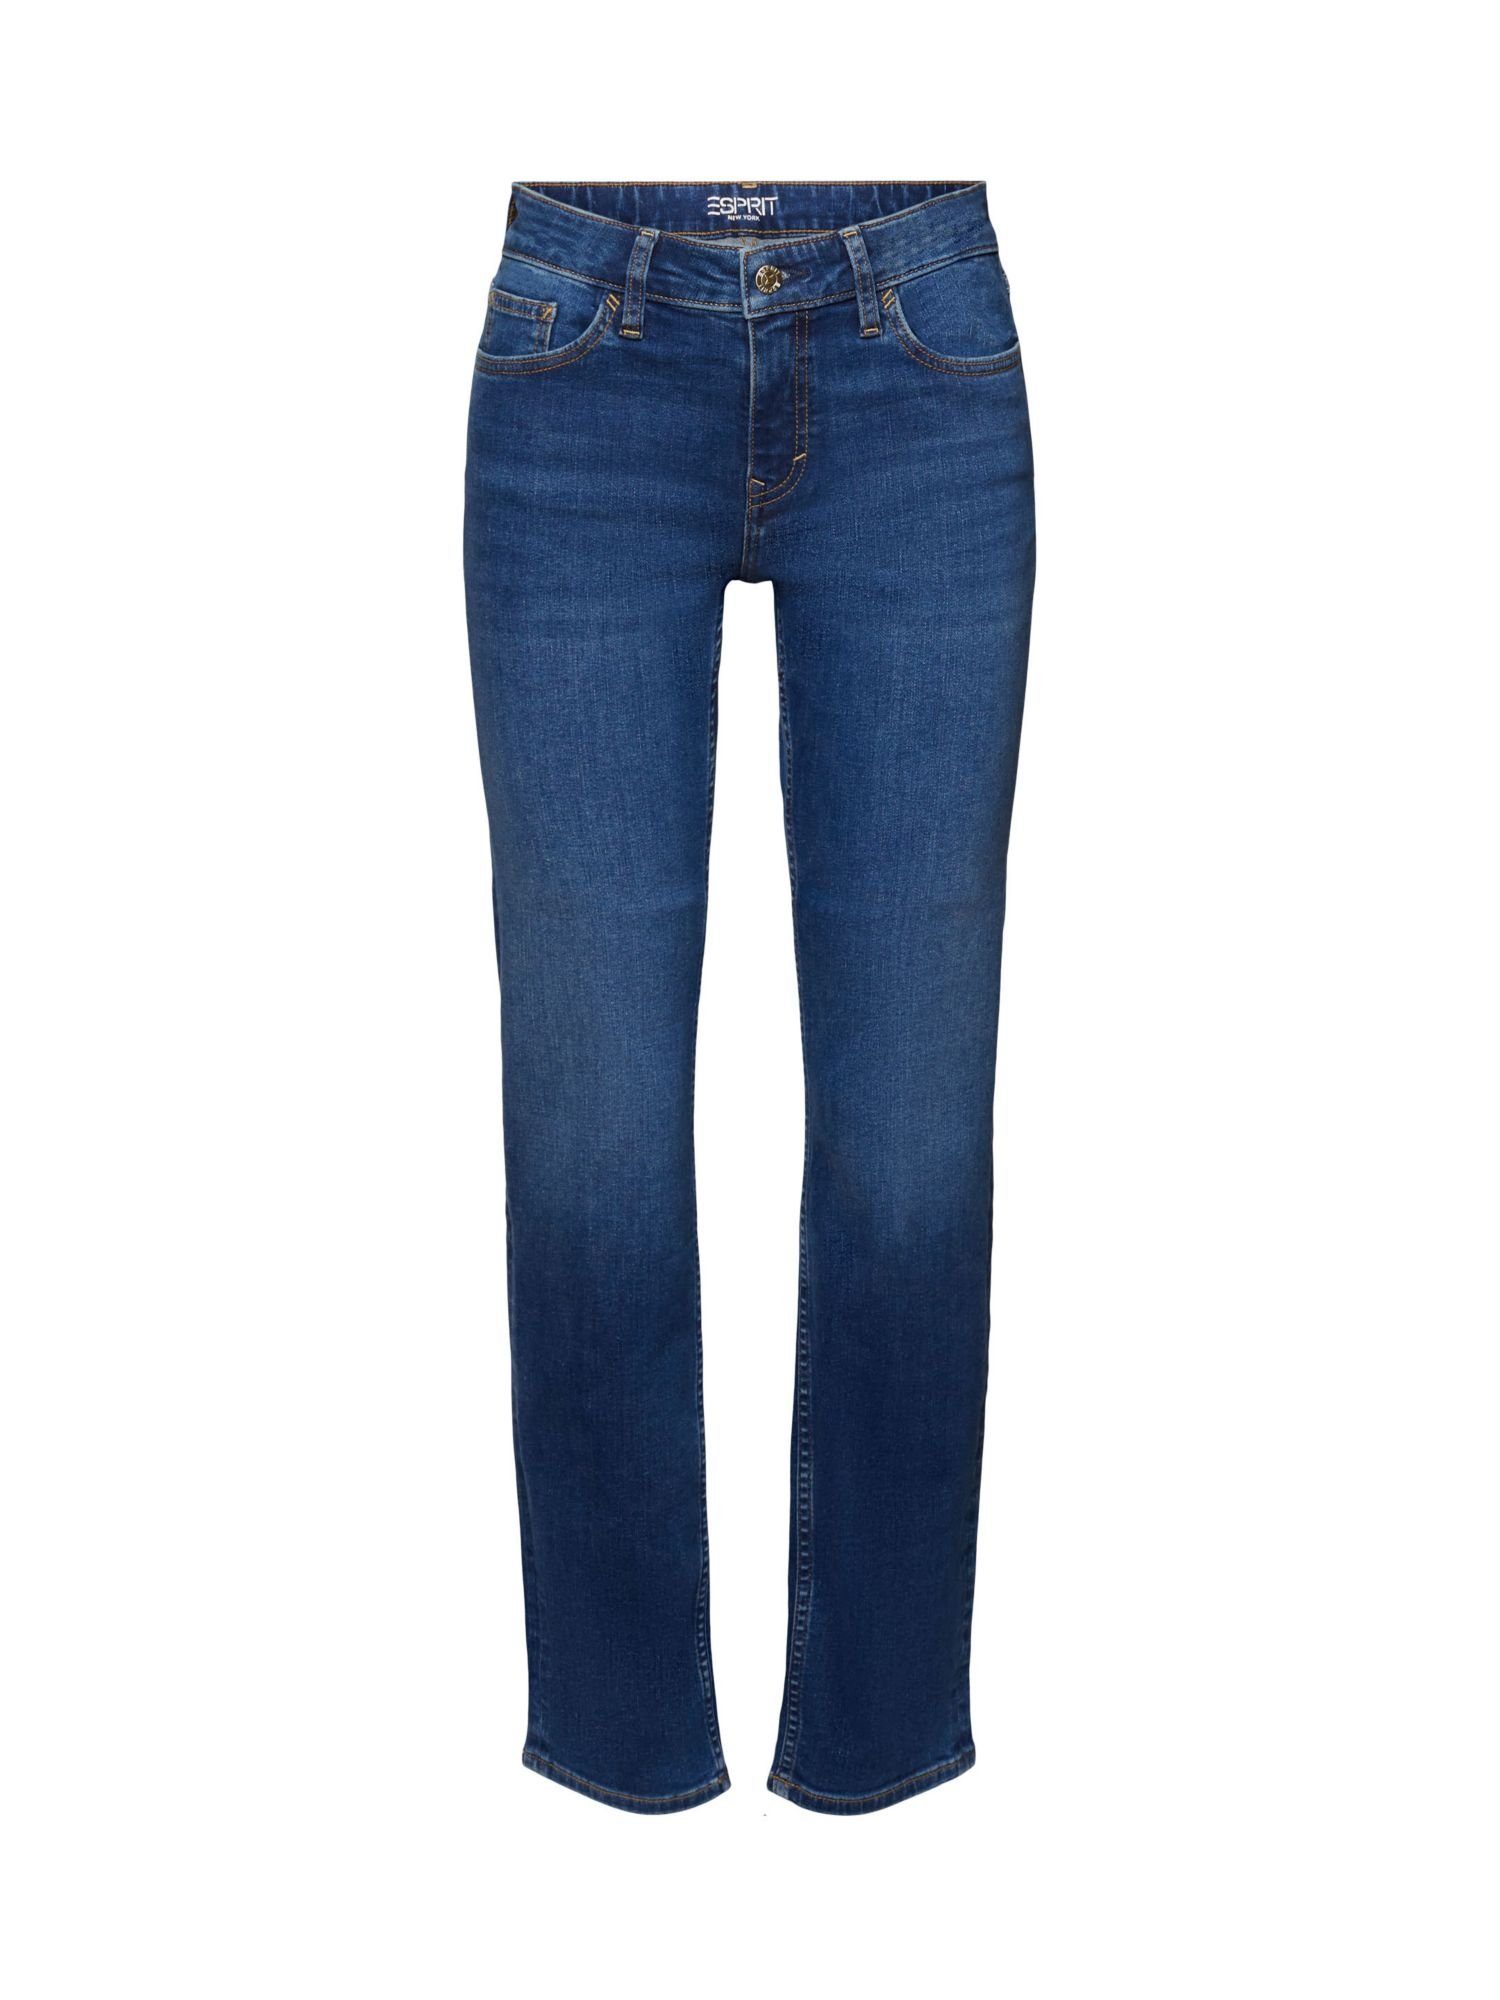 Esprit Straight-Jeans Stretchjeans mit geradem Bein, Baumwollmix BLUE MEDIUM WASHED